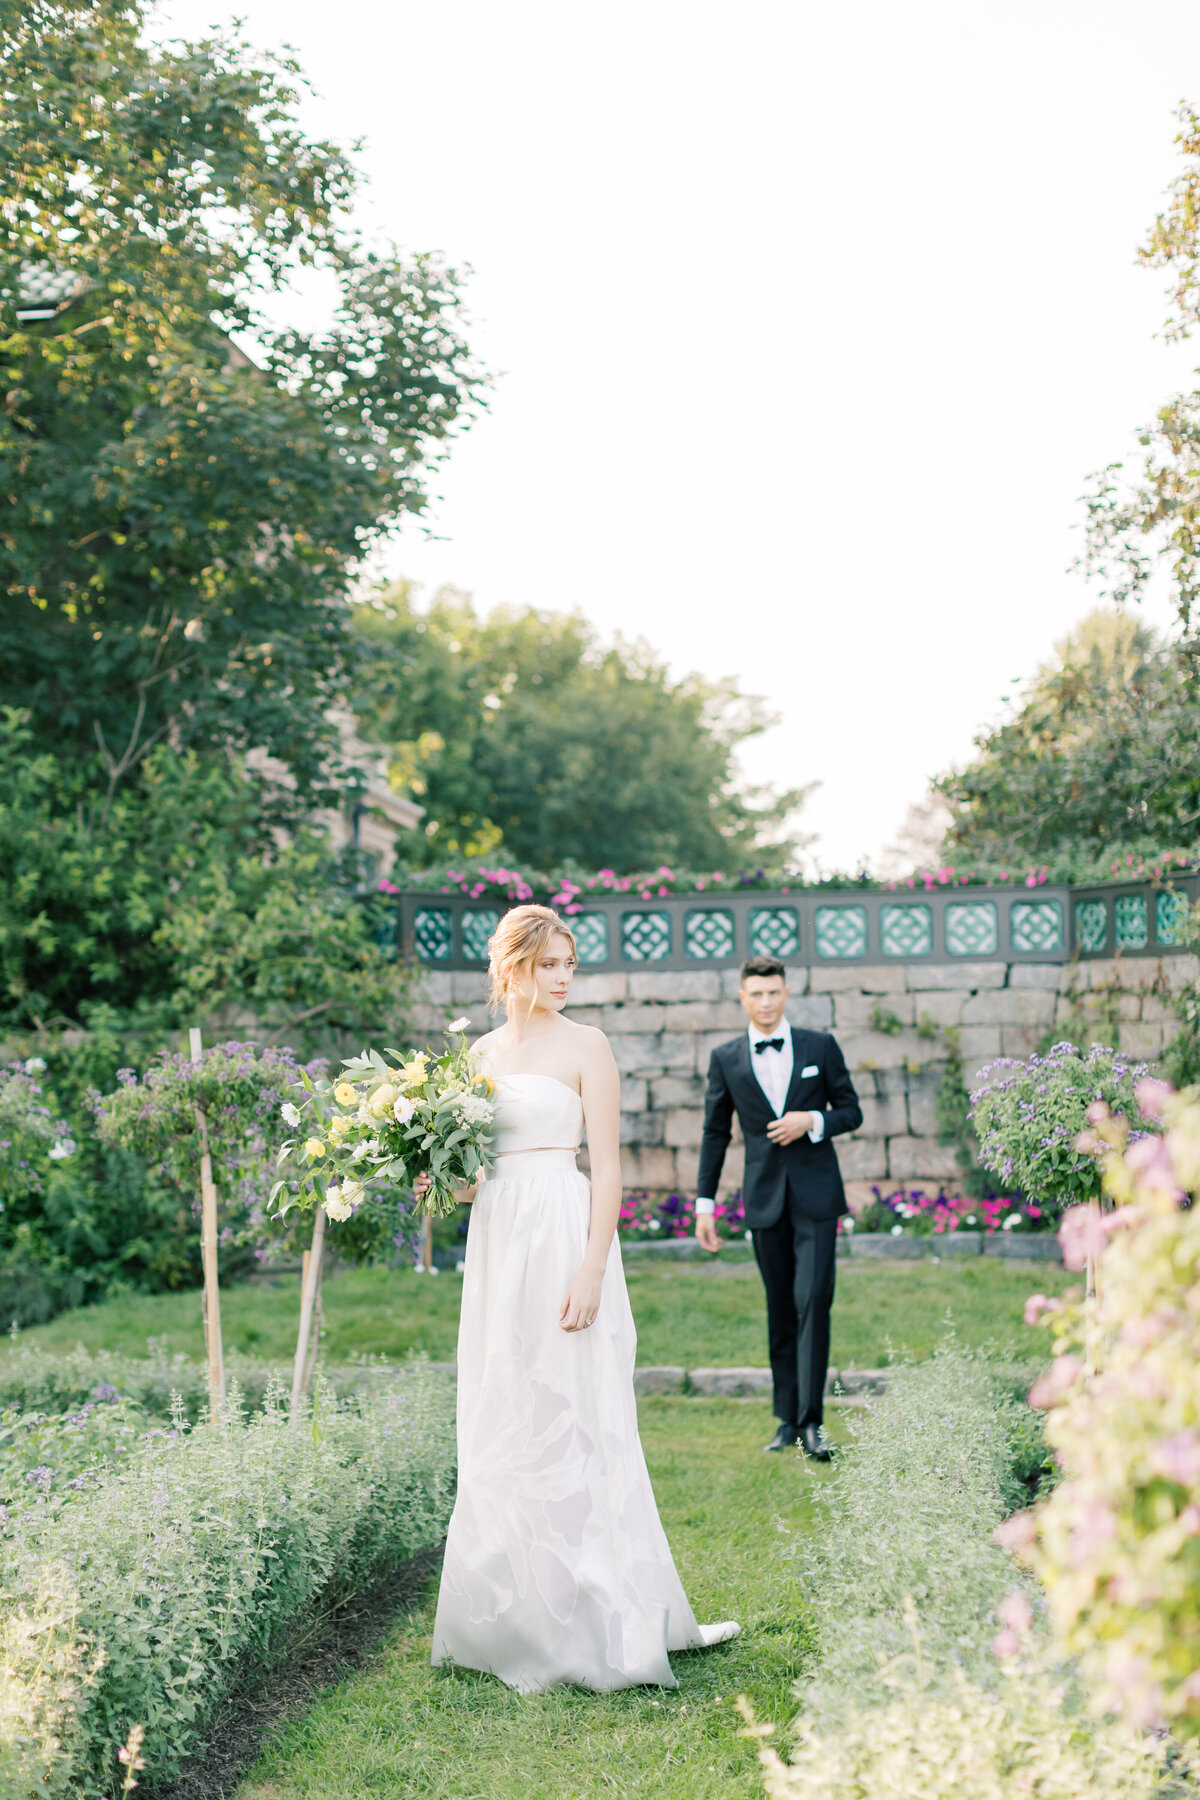 fairy-garden-bride-groom-wedding-photography-ideas-sarah-brehant-events